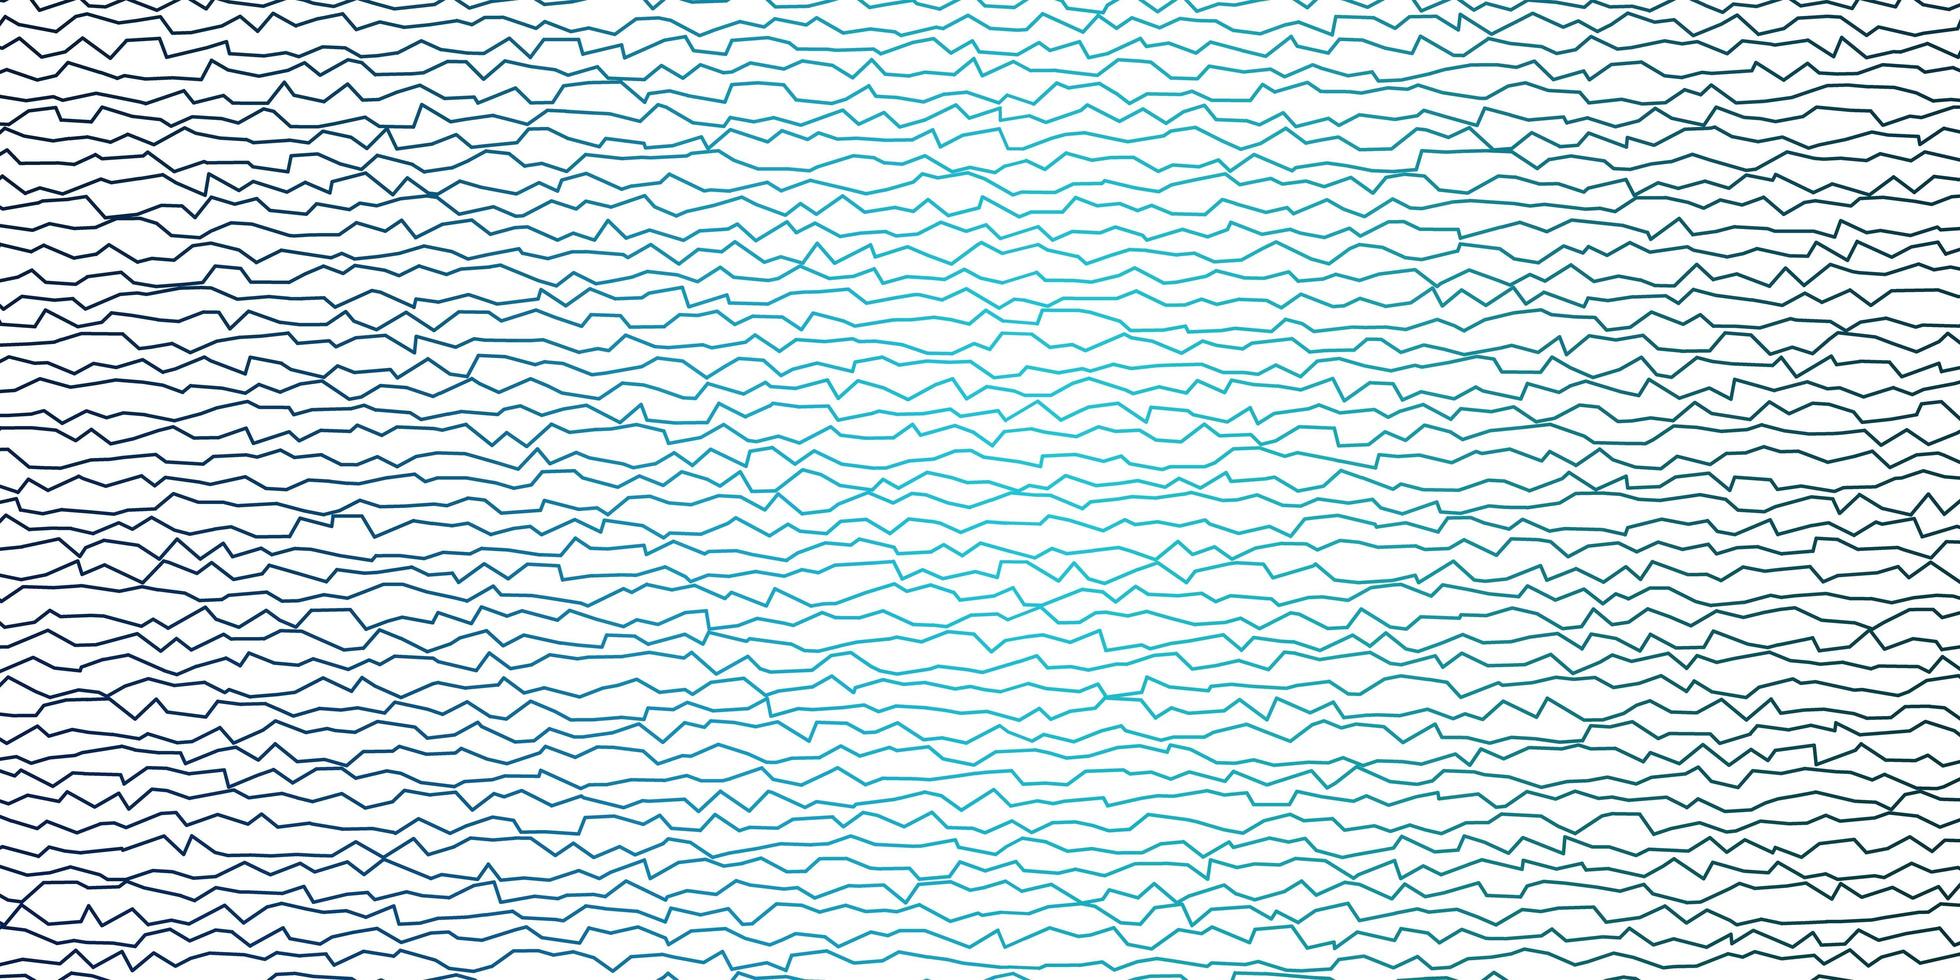 mörkblå vektormönster med böjda linjer. vektor